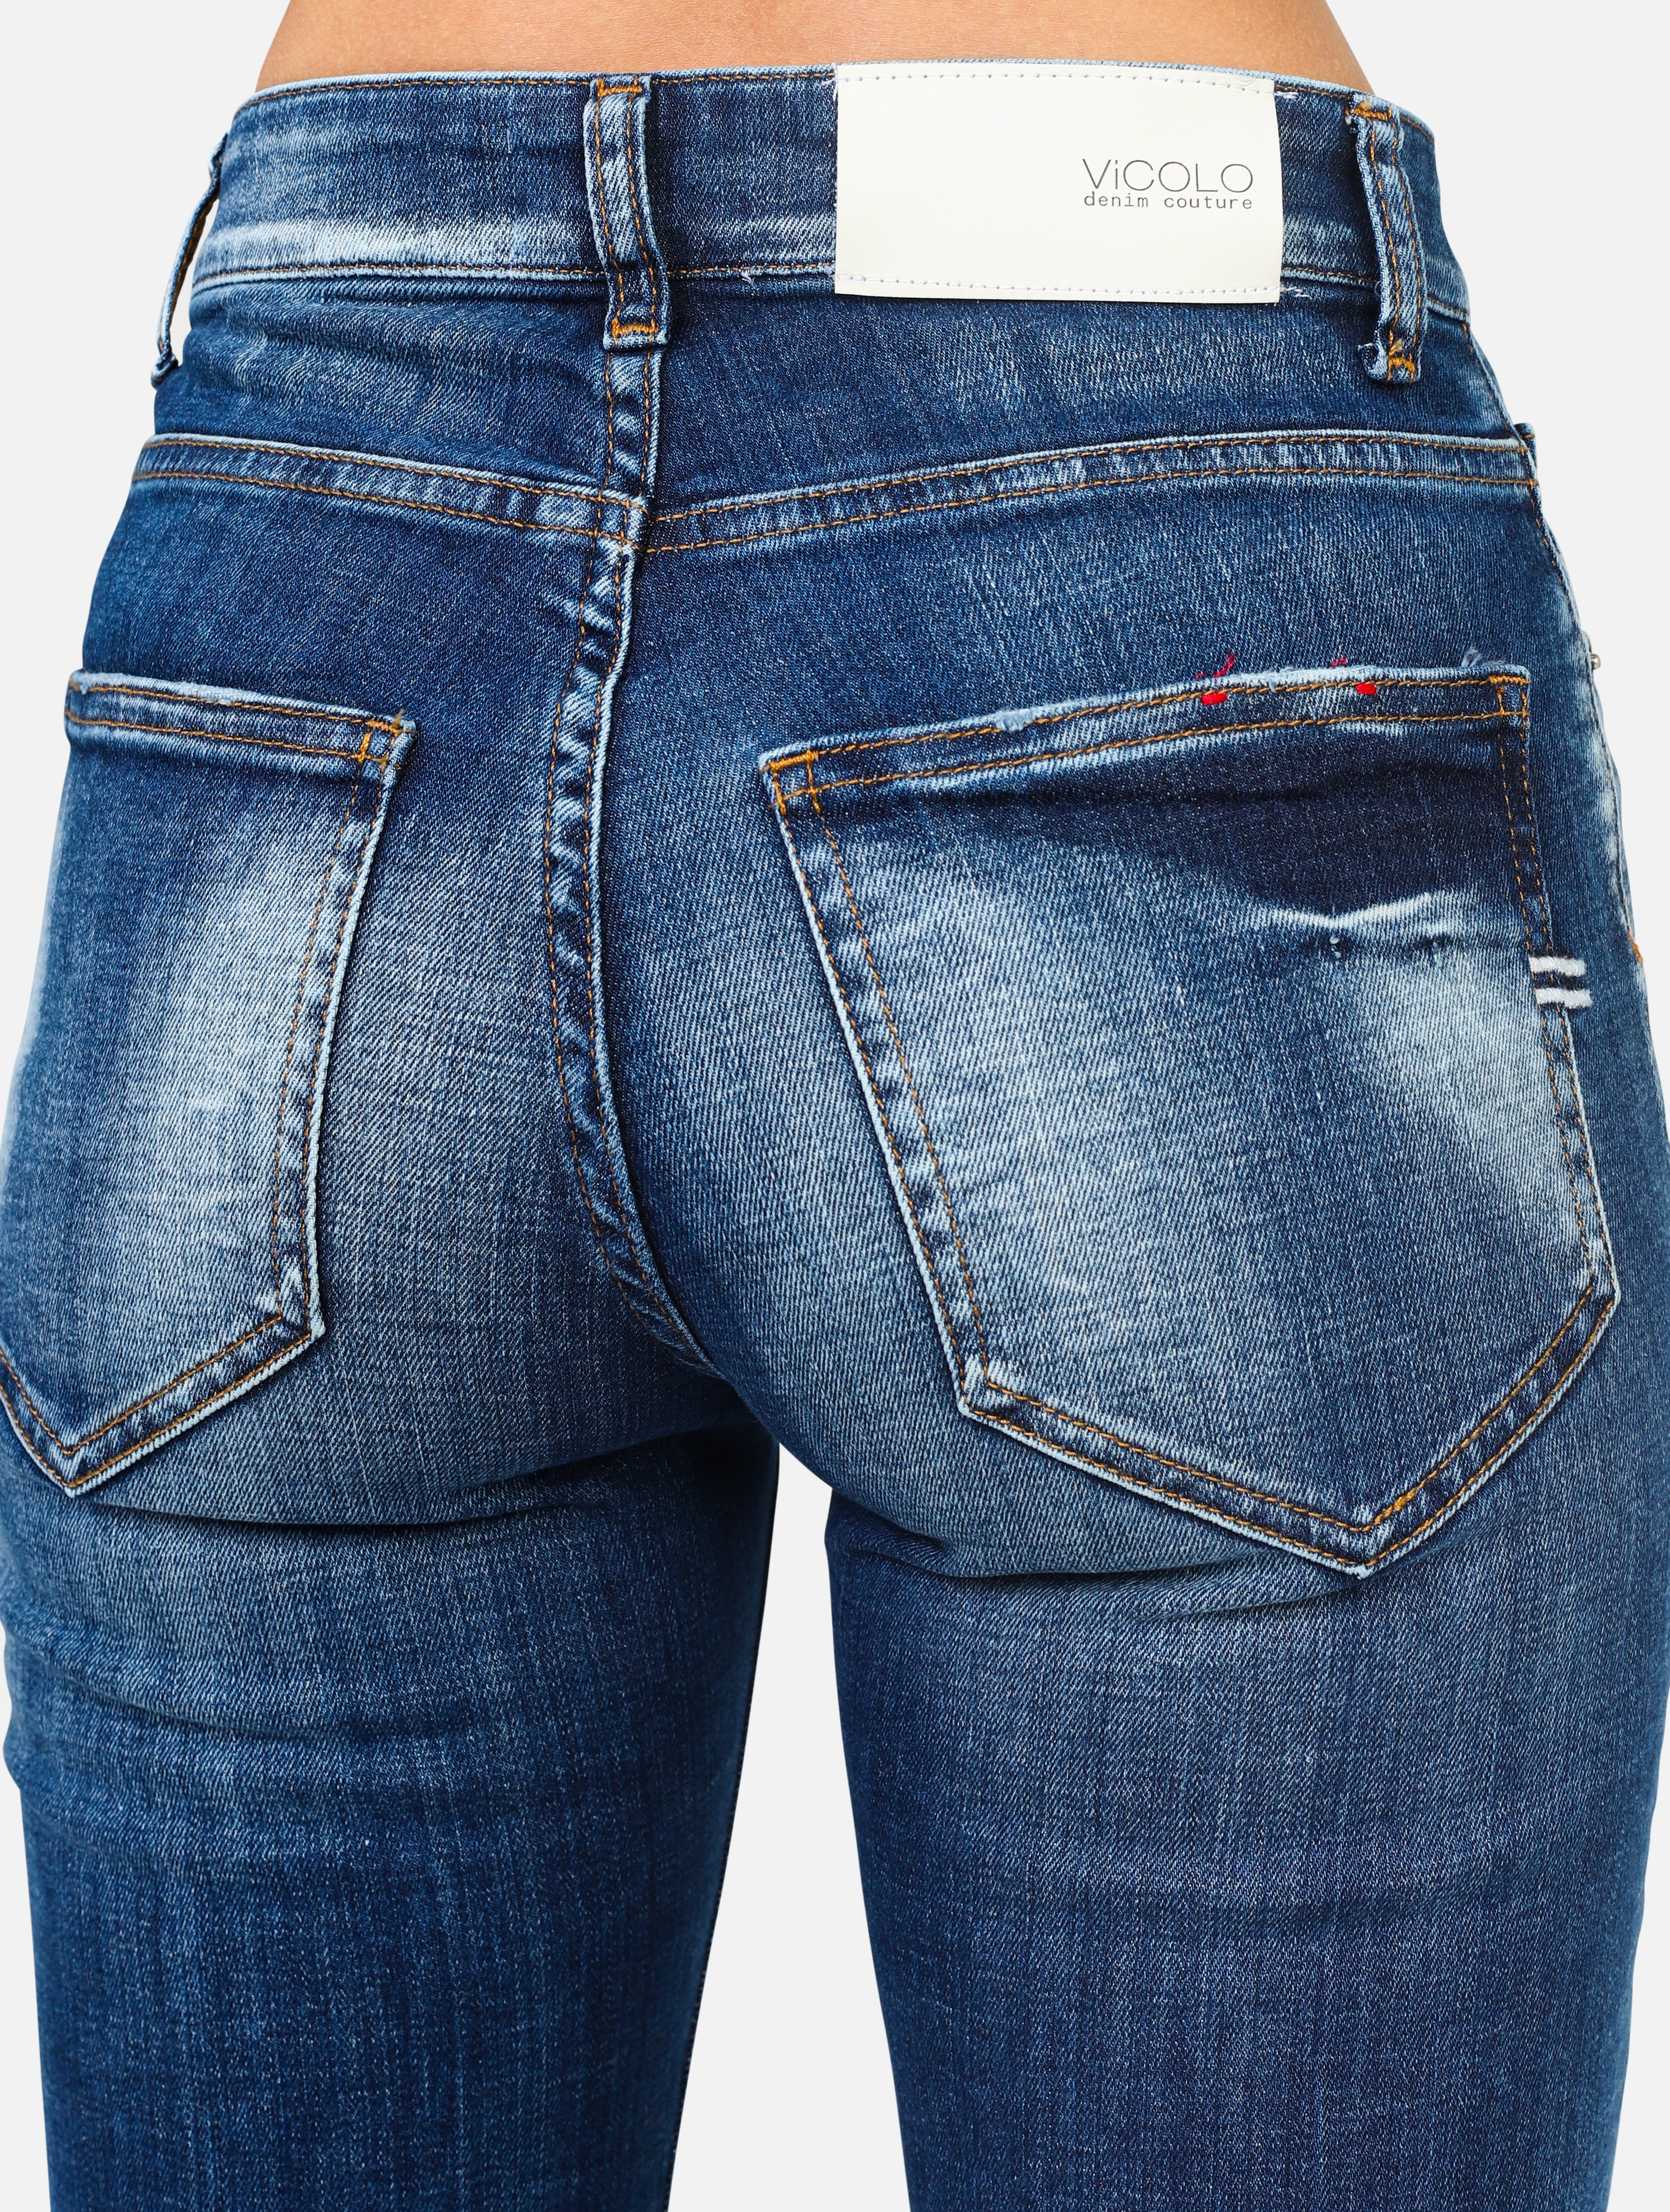 Jeans con 5 tasche daisy , slavato sul ginocchio, 1 piccola abrasione sotto la tasca, chiusura tutti bottoni -  denim woman  - 5